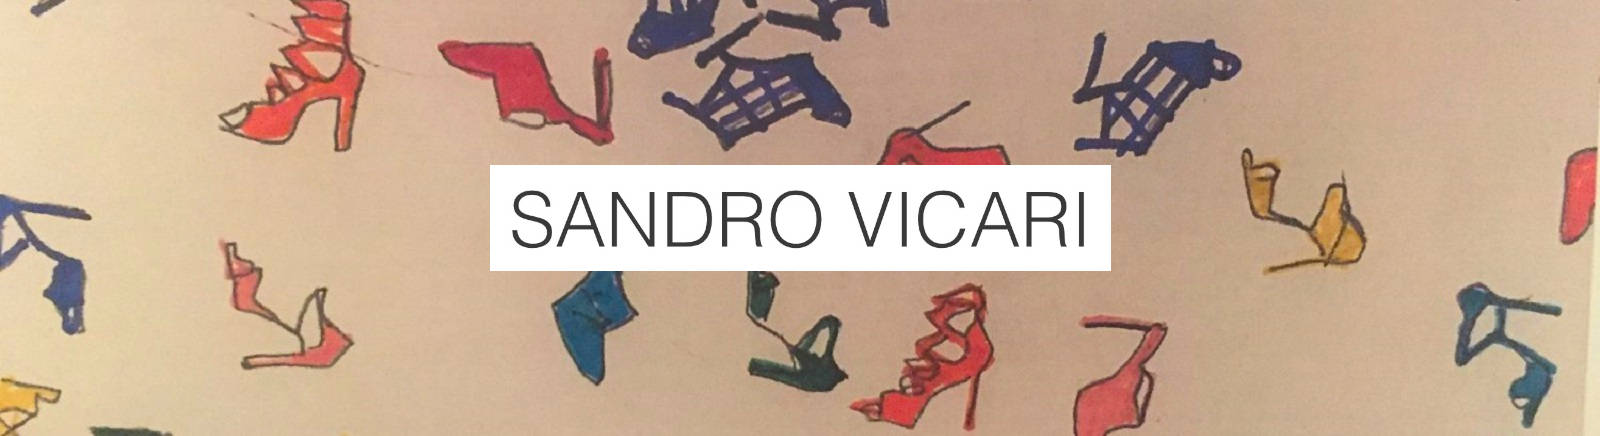 Sandro Vicari Damenschuhe online im Juppen Schuhe Shop